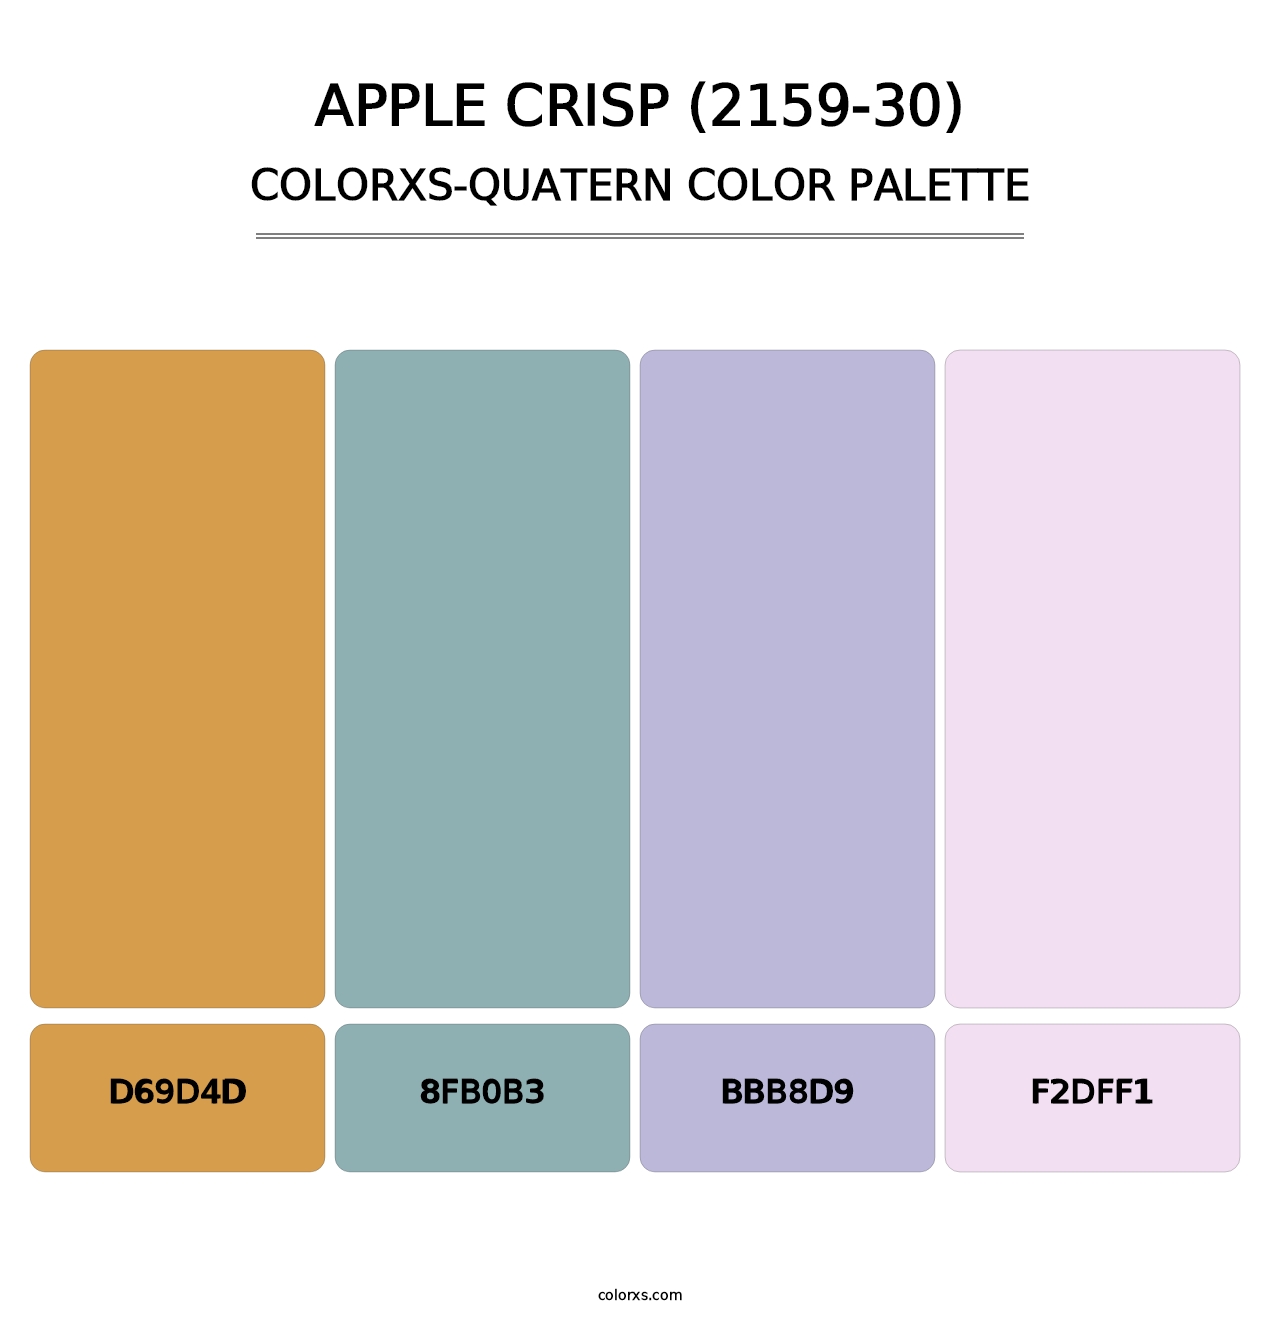 Apple Crisp (2159-30) - Colorxs Quatern Palette